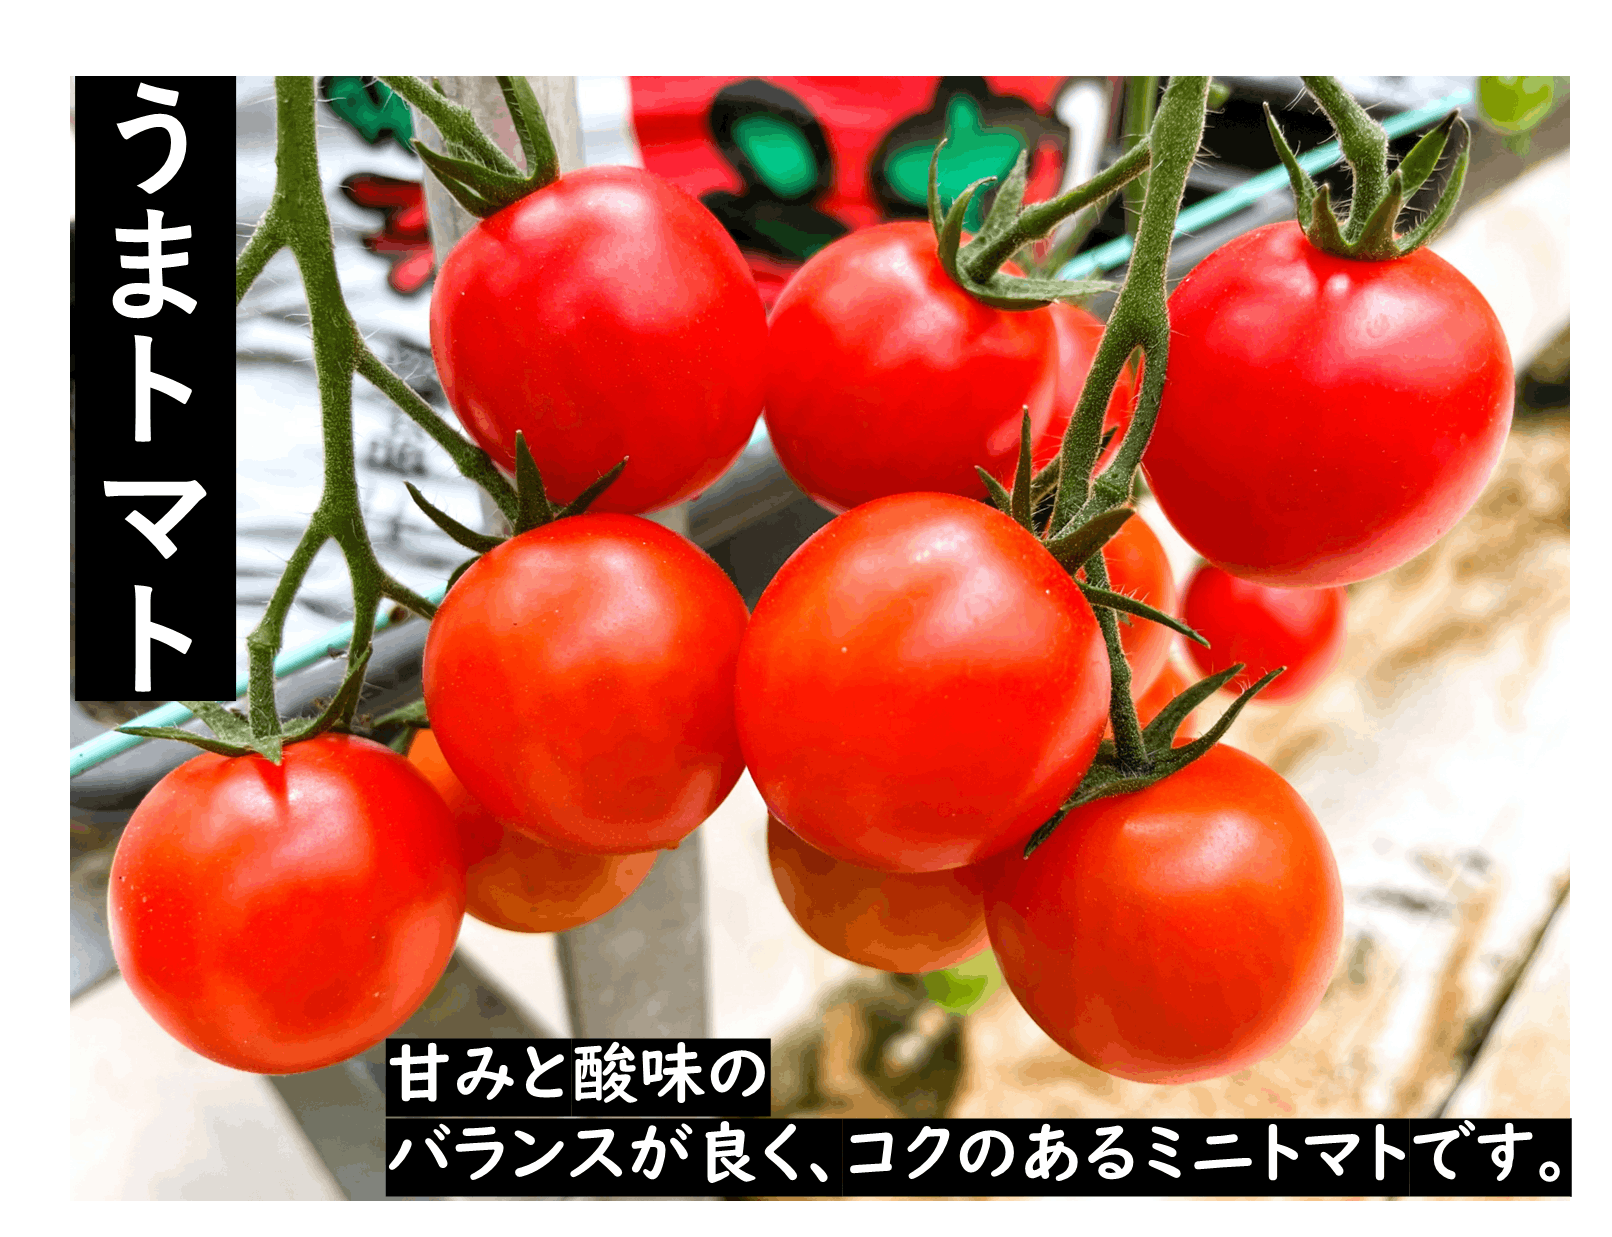 トマト様専用 - メンテナンス